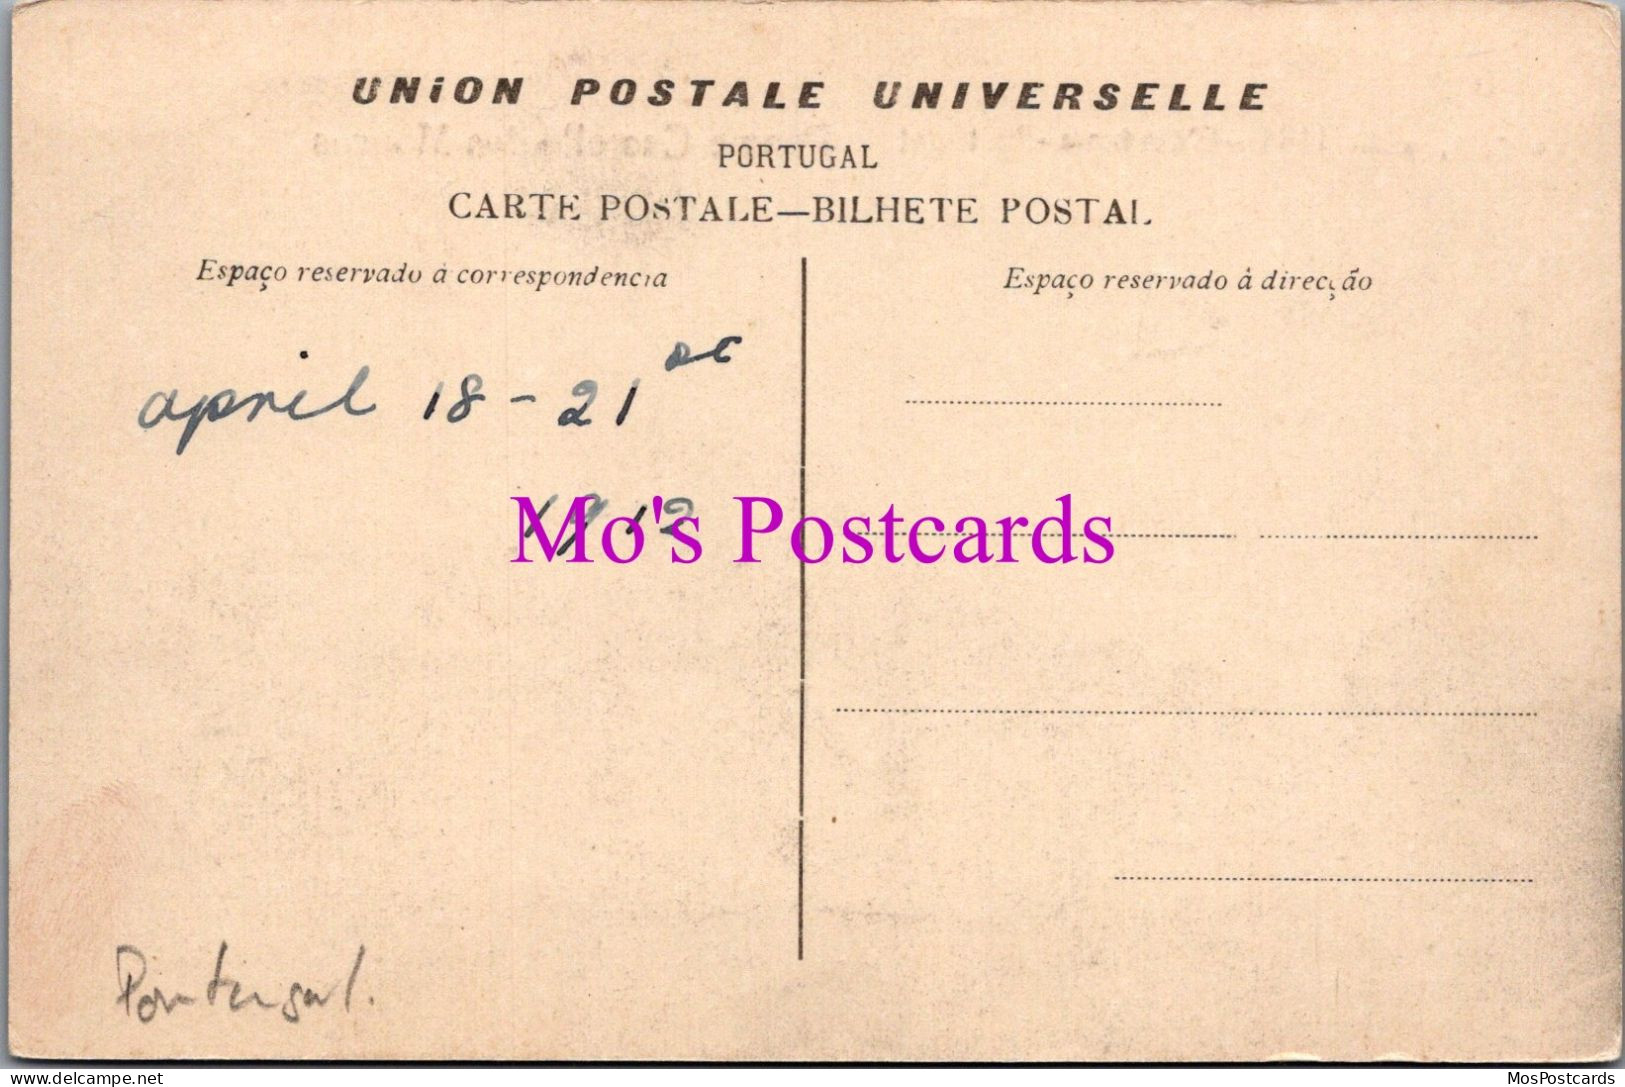 Portugal Postcard - Cintra, Pena E Castello Dos Mouros  DZ267 - Lisboa